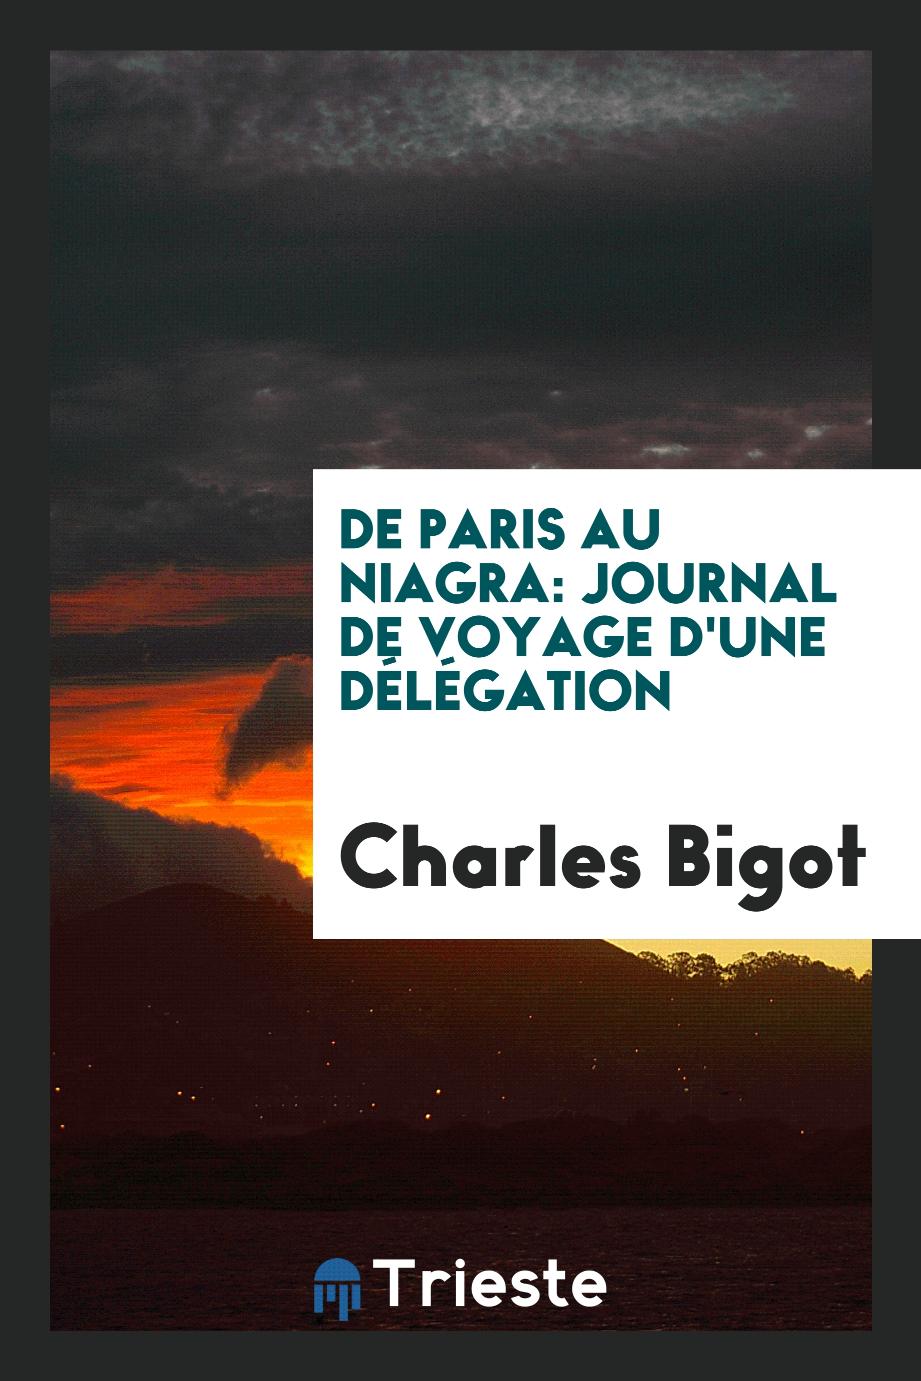 De Paris au Niagra: journal de voyage d'une délégation